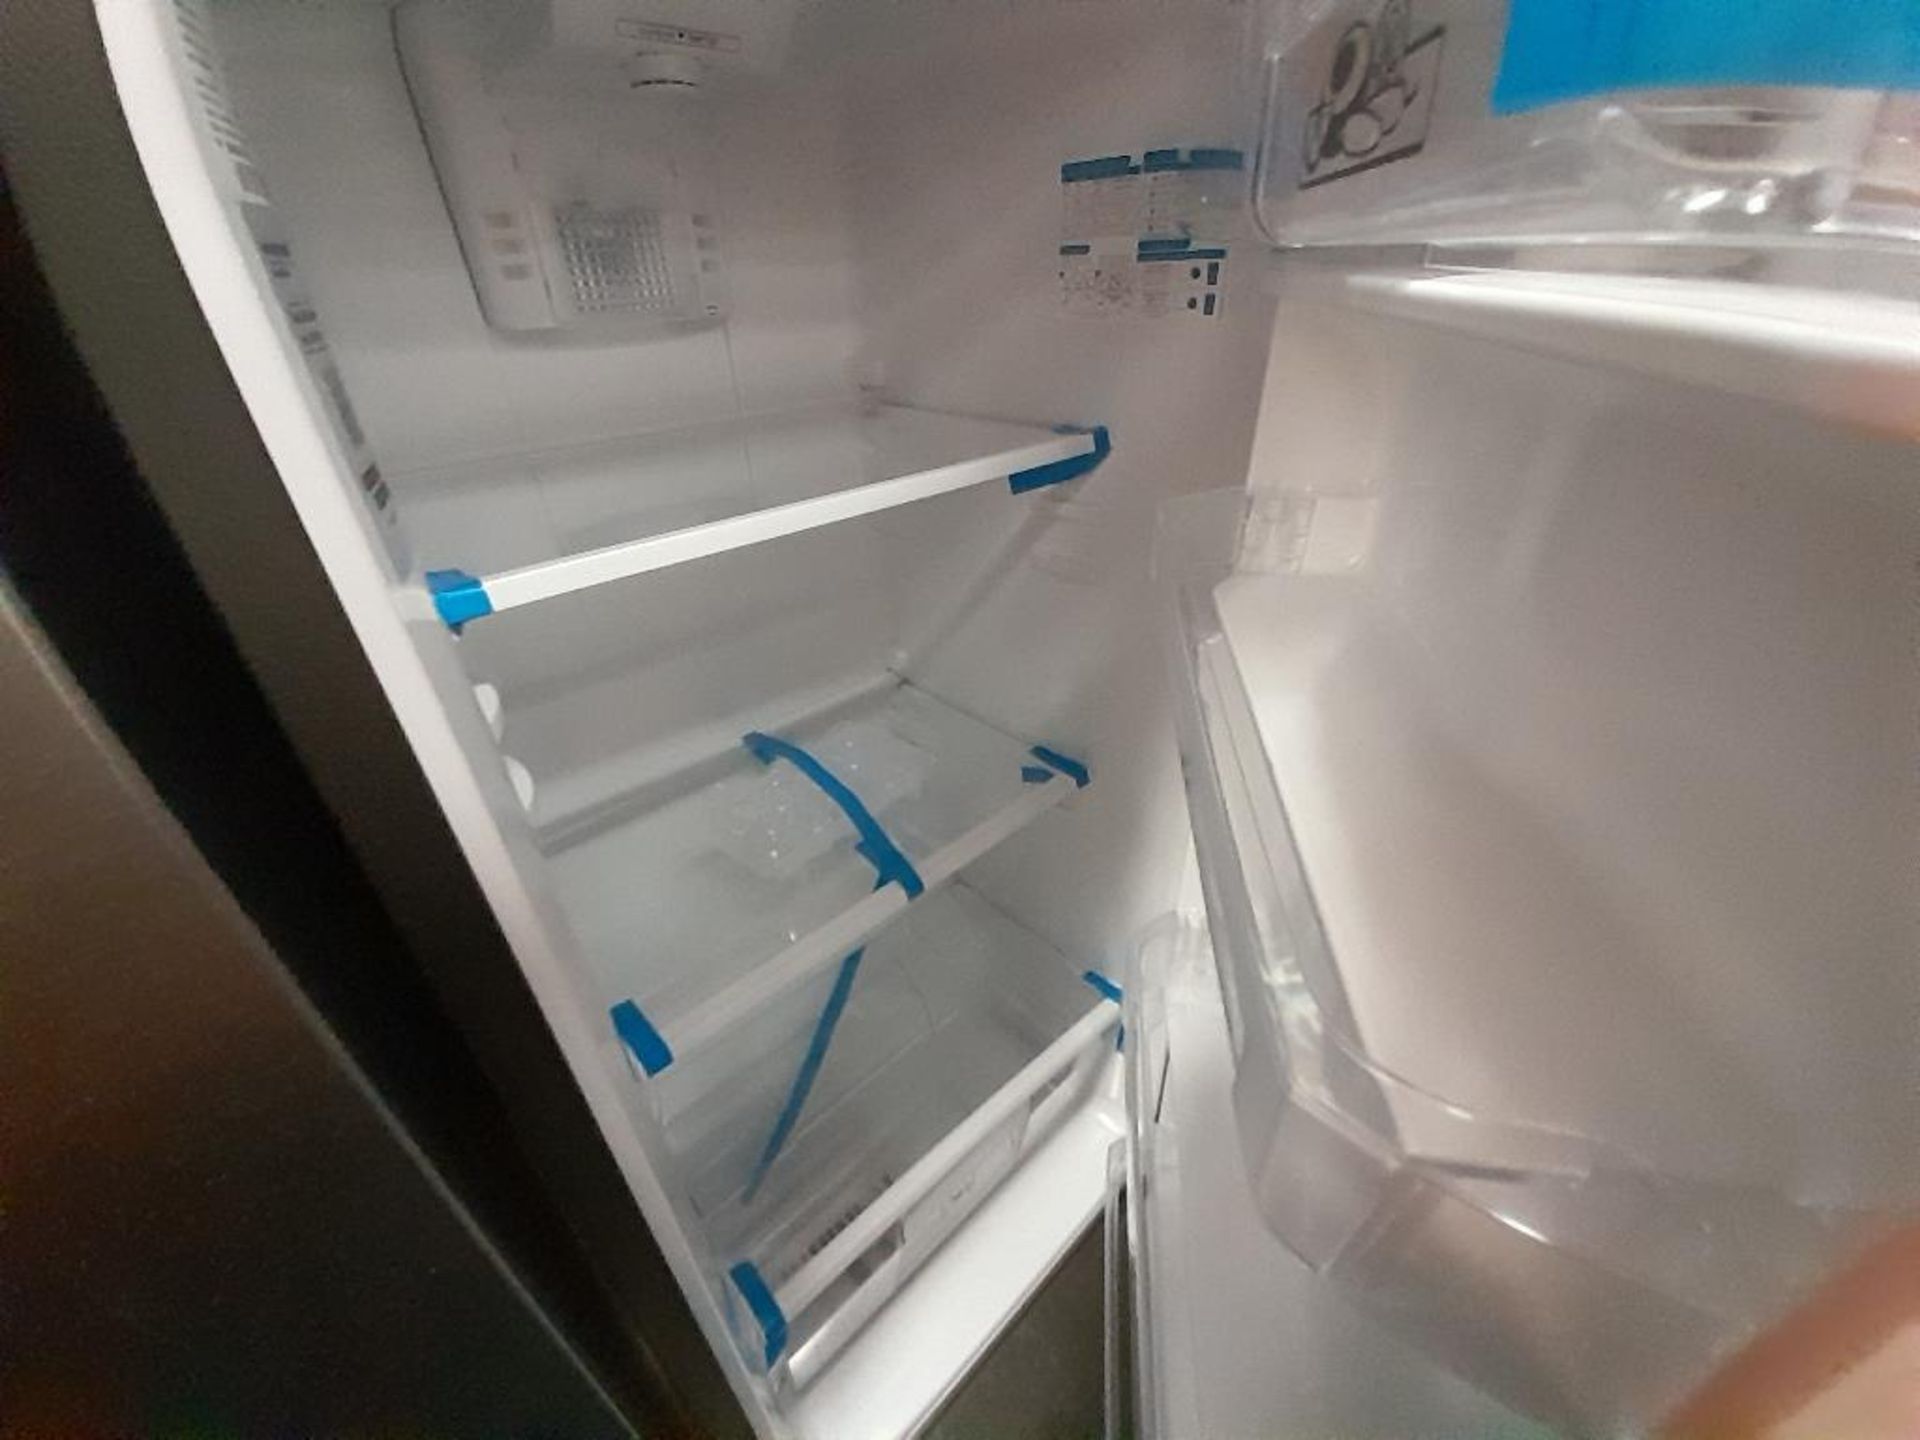 Lote de 2 refrigeradores contiene: 1 Refrigerador Con Dispensador De Agua MABE, Modelo FJMRDA, Seri - Image 7 of 8